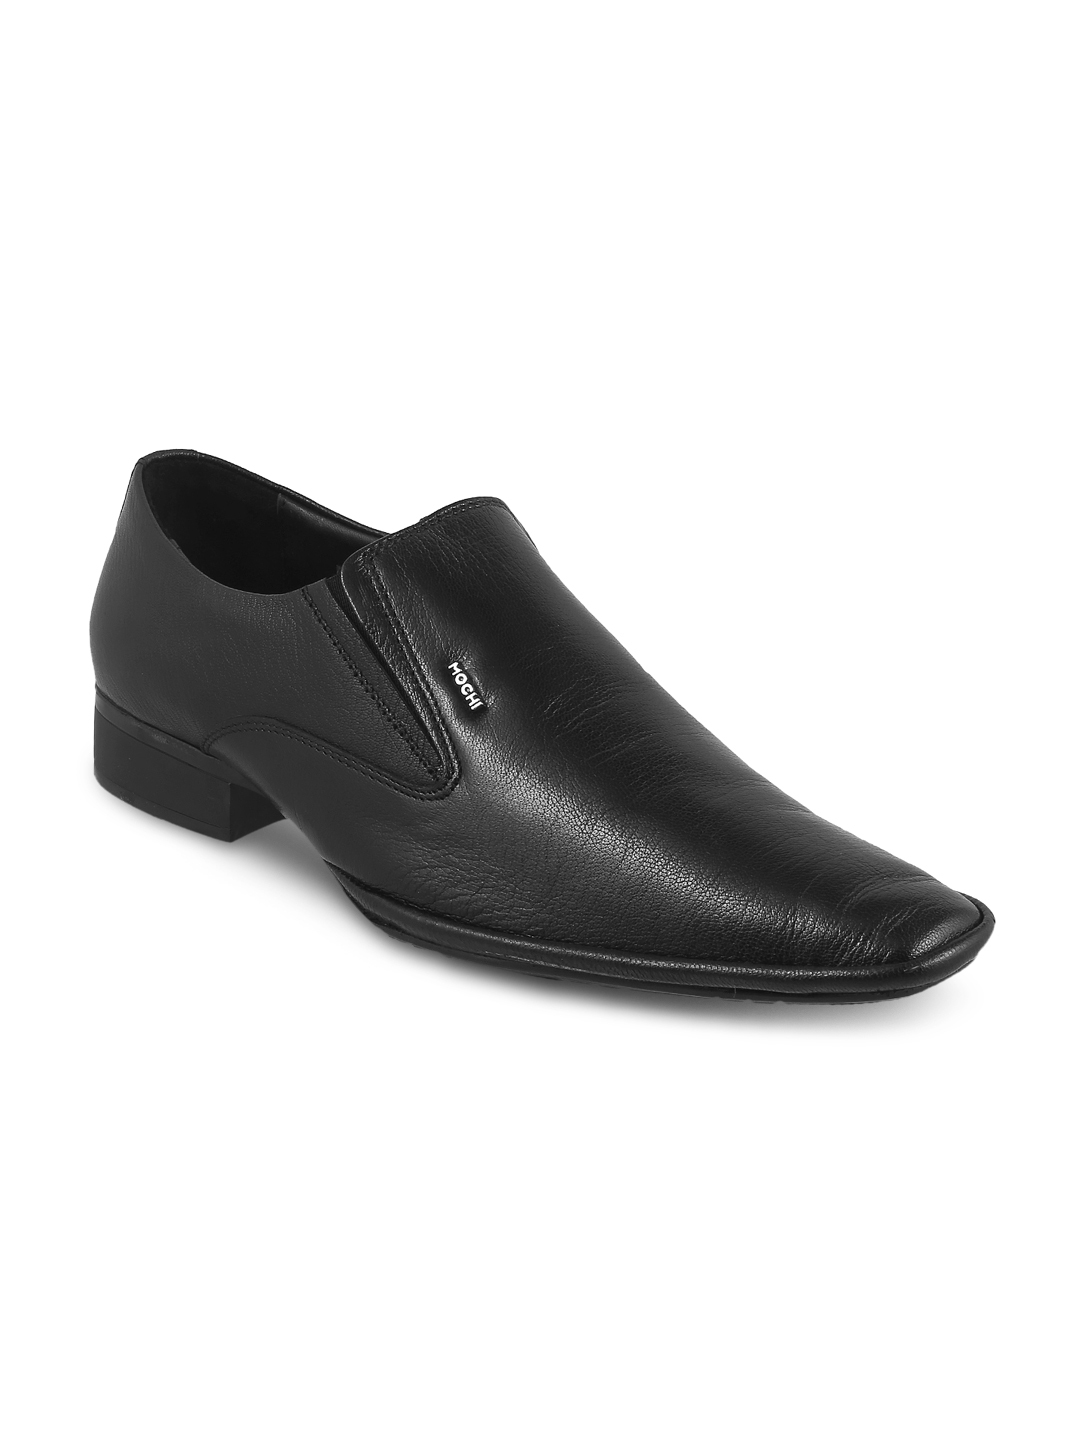 mochi formal shoes for men